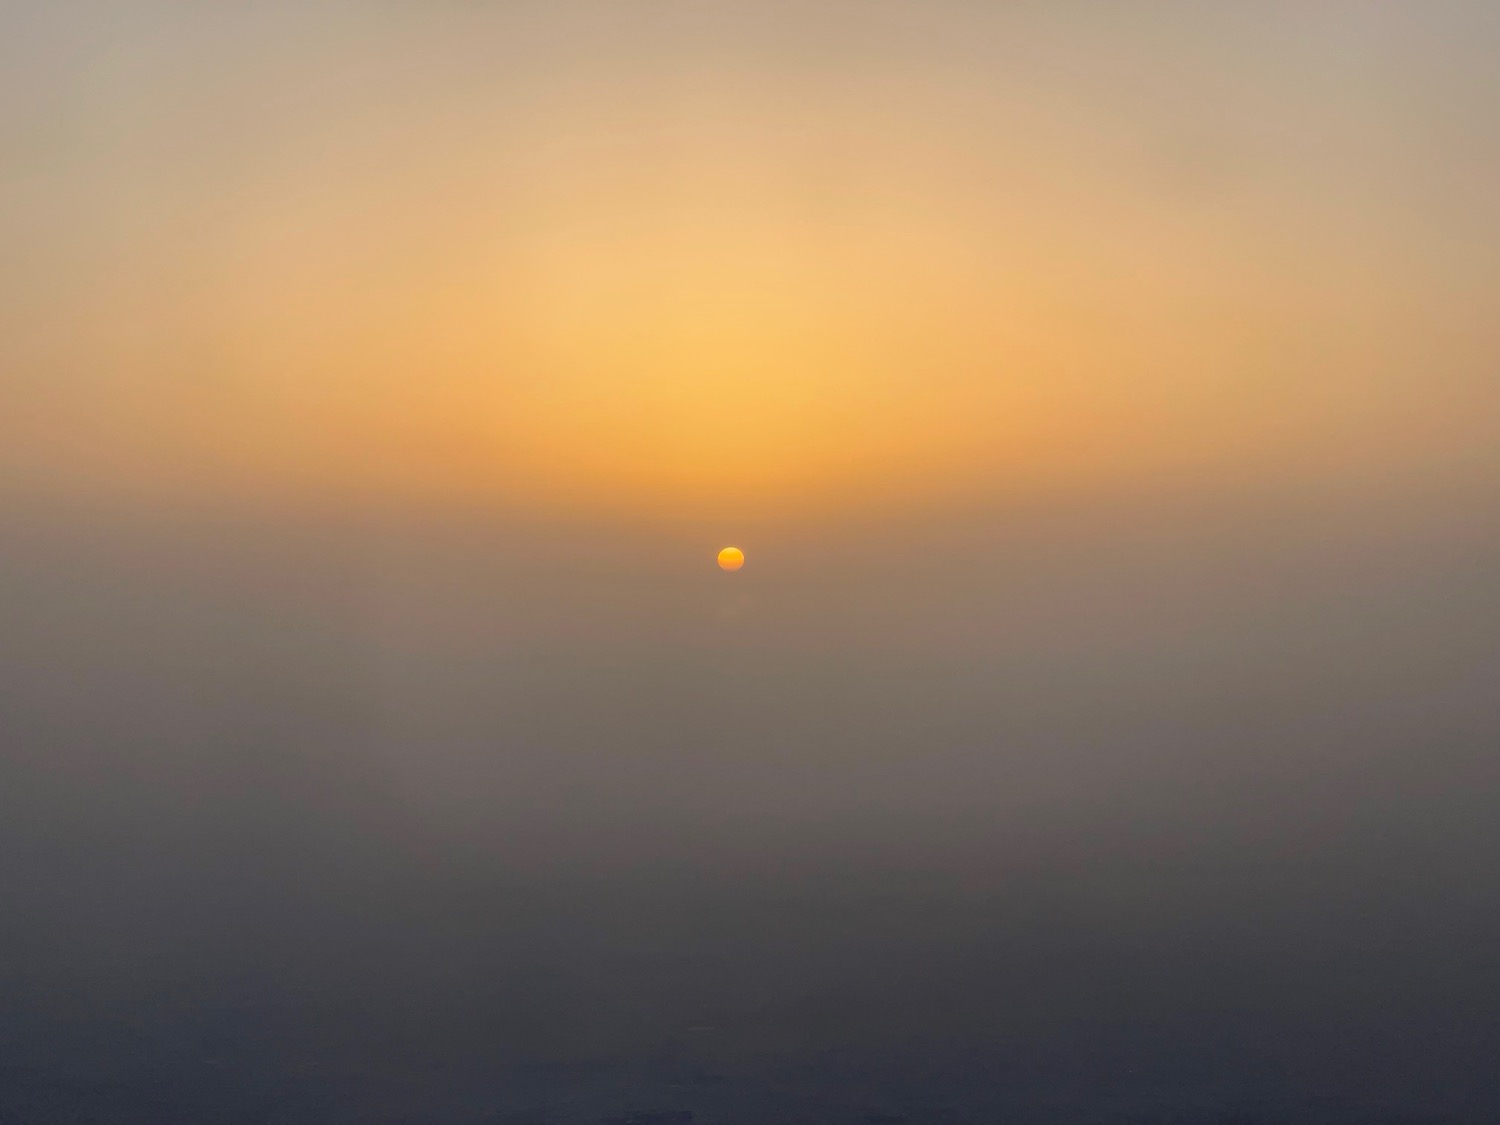 a sun setting over a foggy area